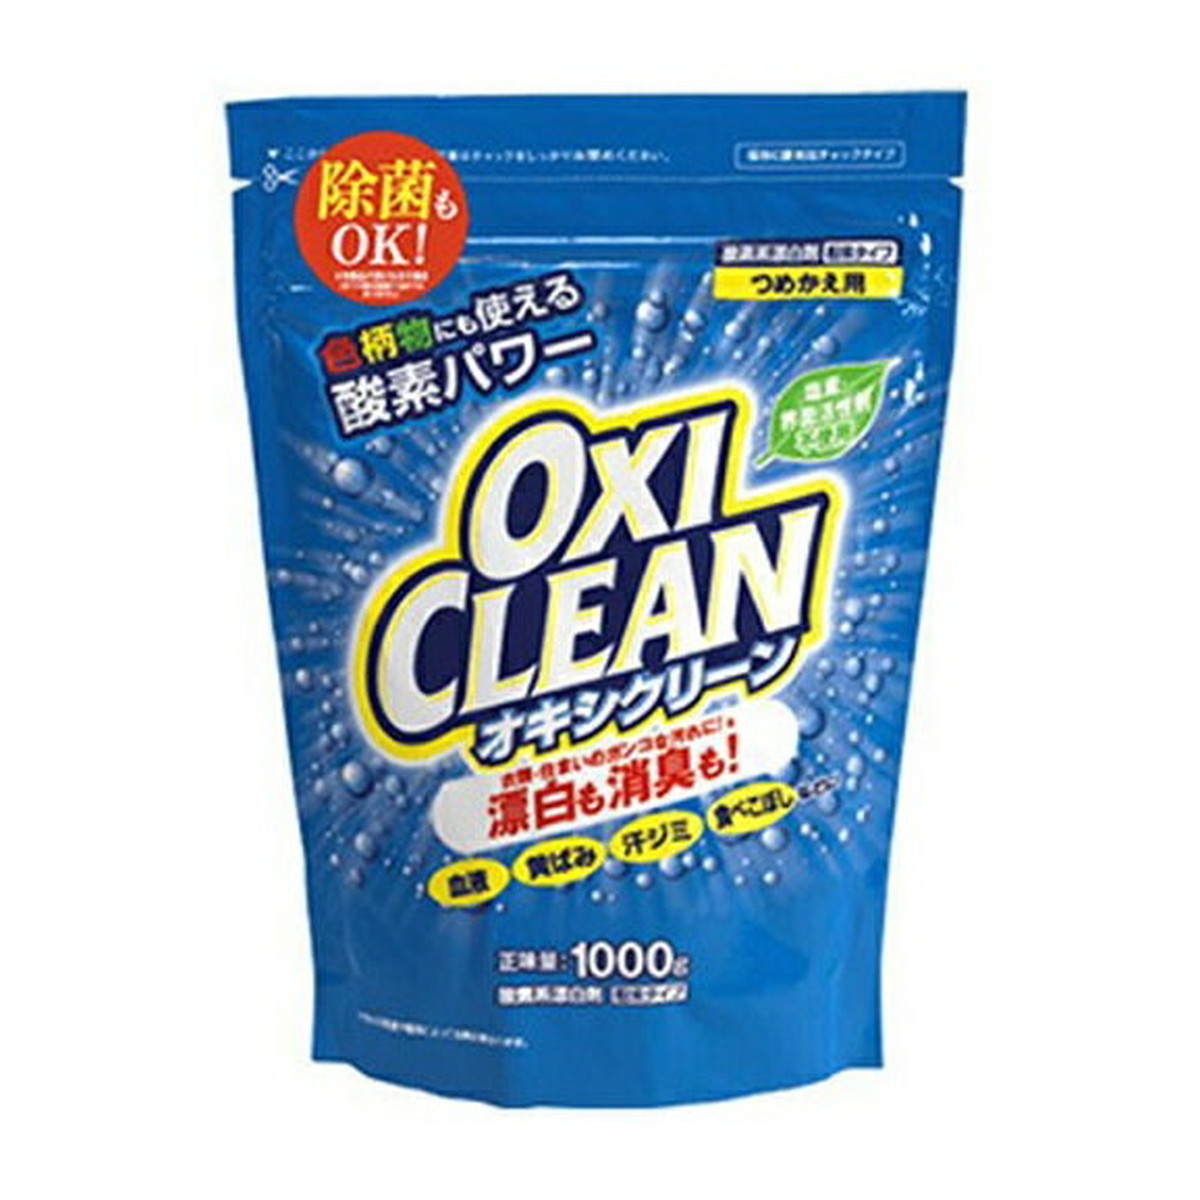 特価キャンペーン コストコ オキシクリーン1000g OXI CLEAN o50 aob.adv.br